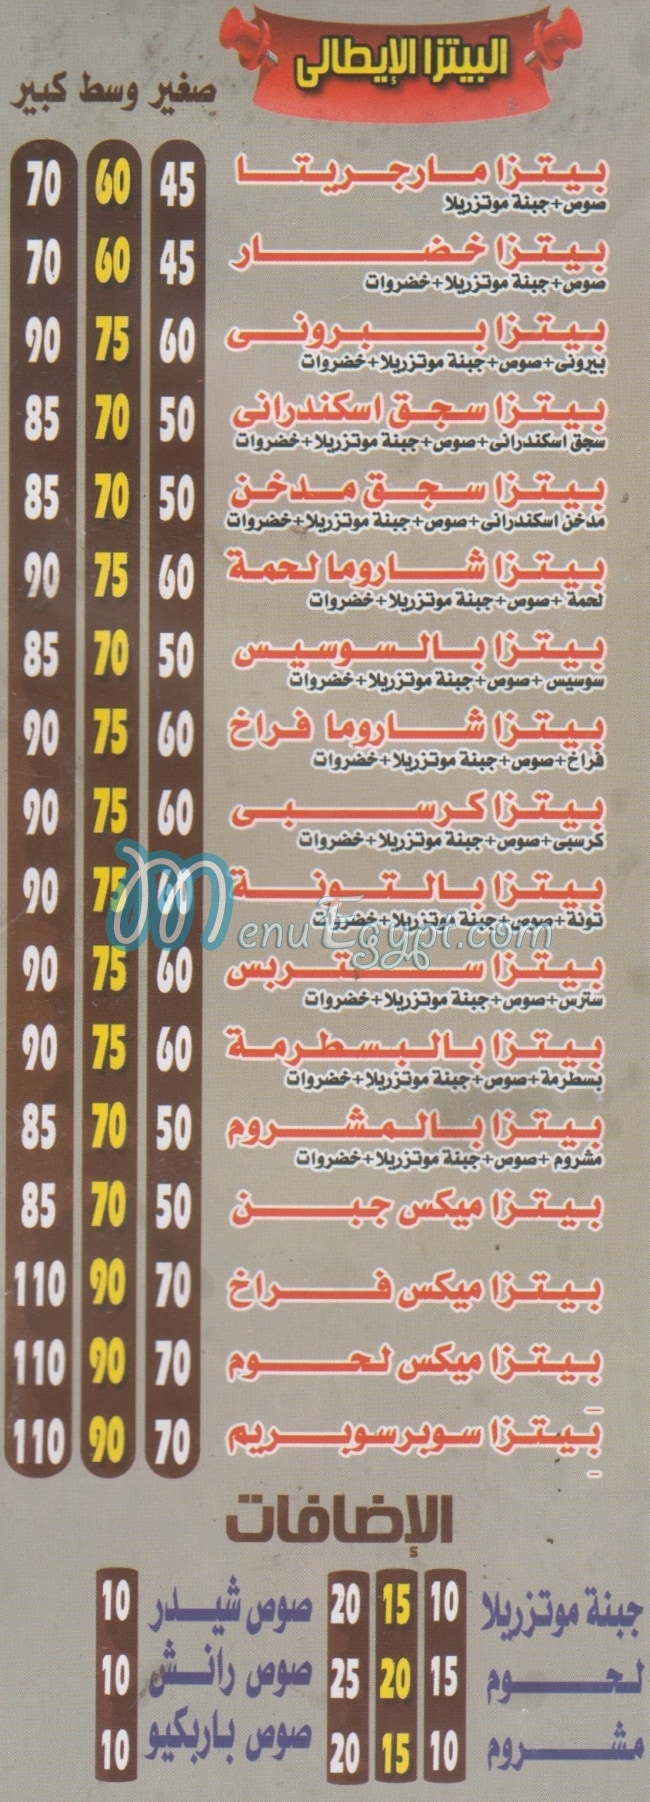 Awlad EL SHEKH online menu